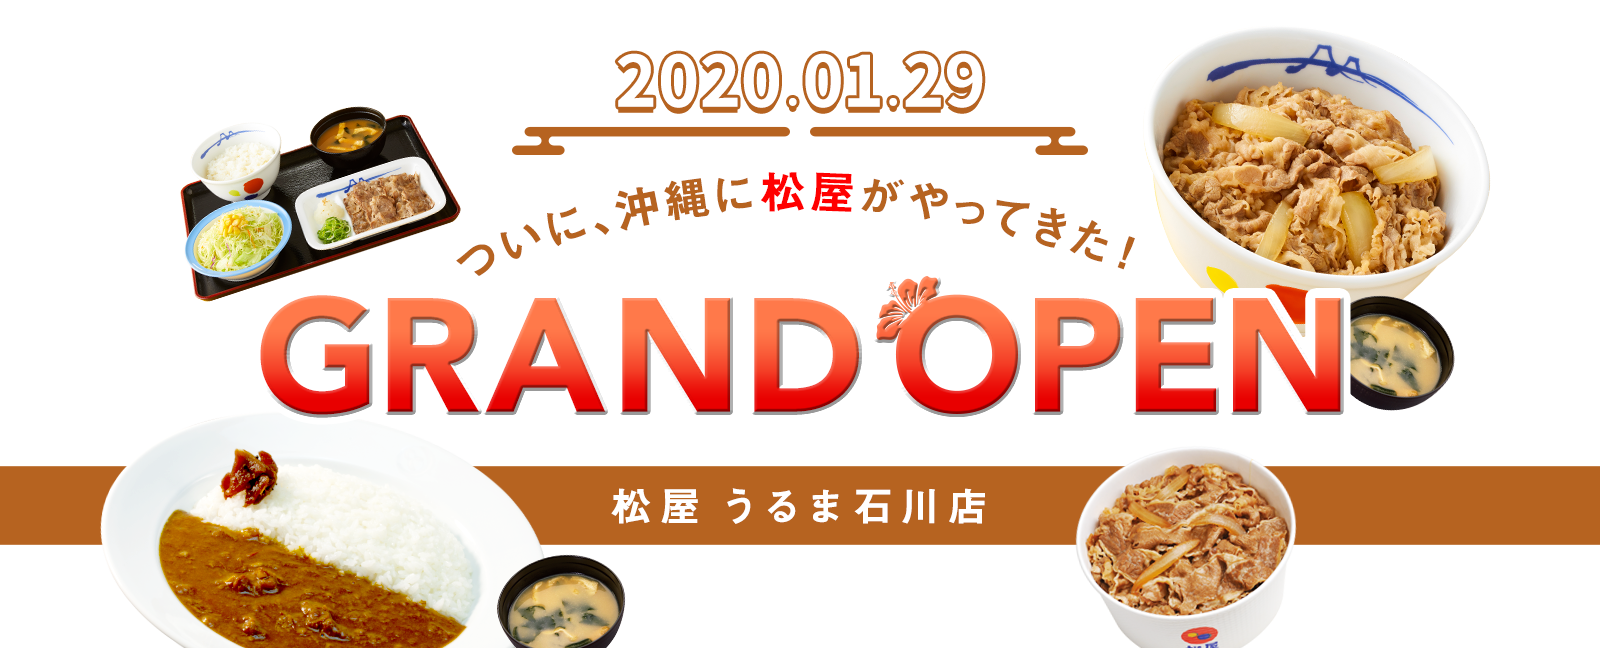 松屋 うるま石川店 2020.01.29 GRAND OPEN